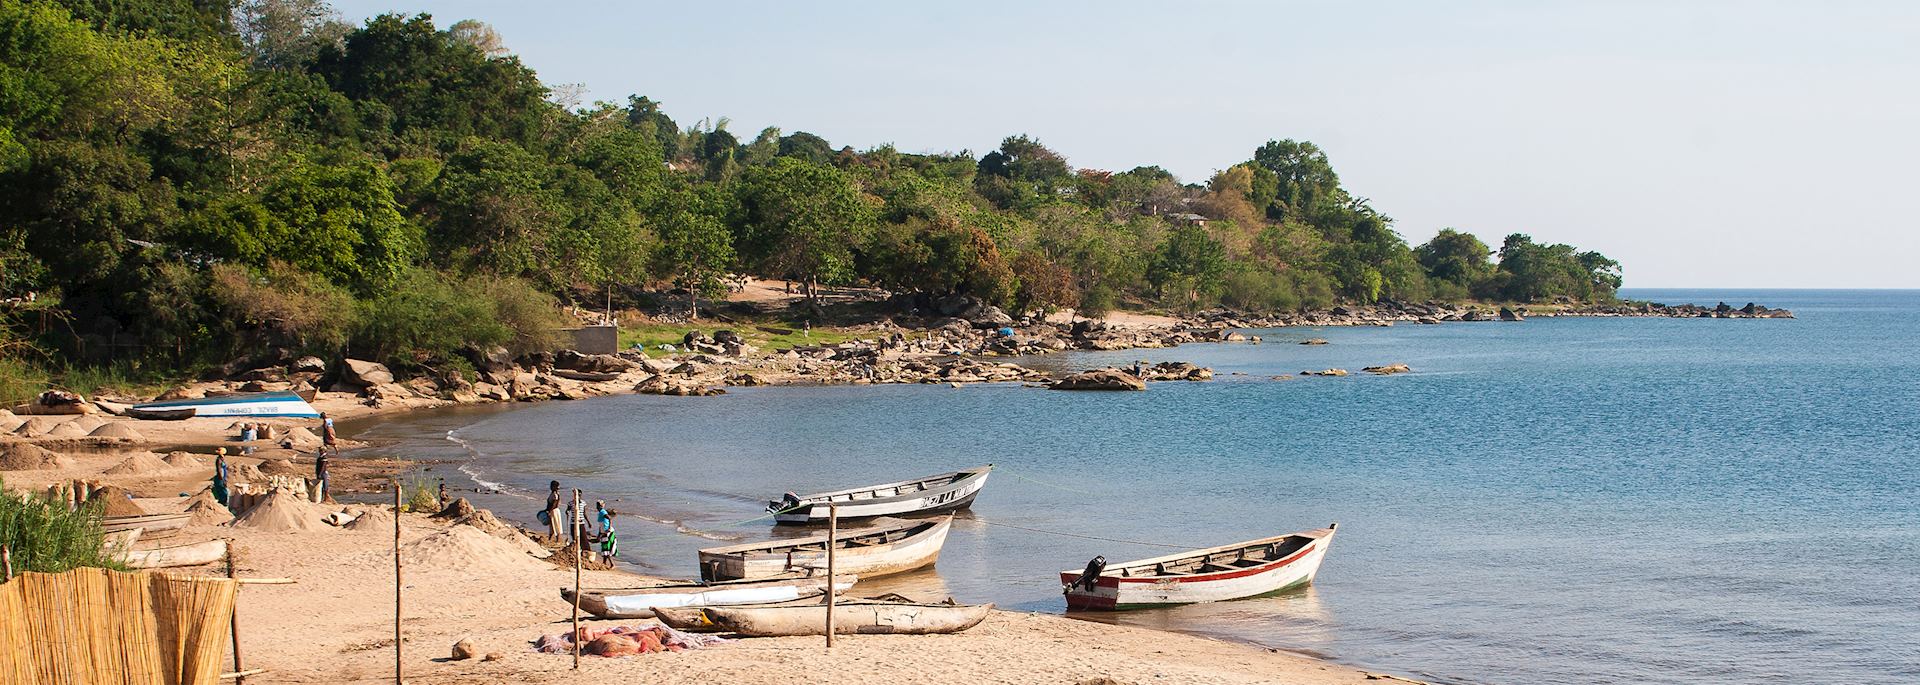 Nkhata Bay, Malawi